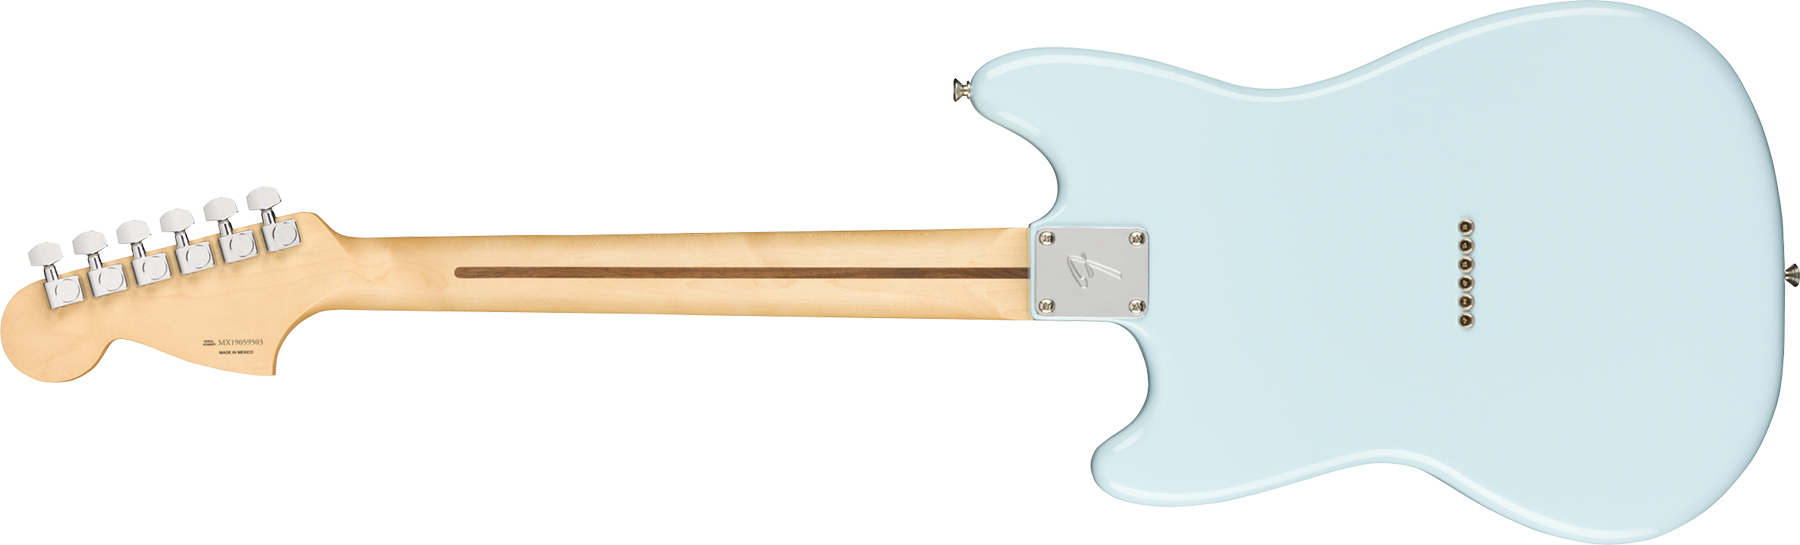 Fender Mustang Player Mex Ht Ss Mn - Surf Blue - Retro-rock elektrische gitaar - Variation 1